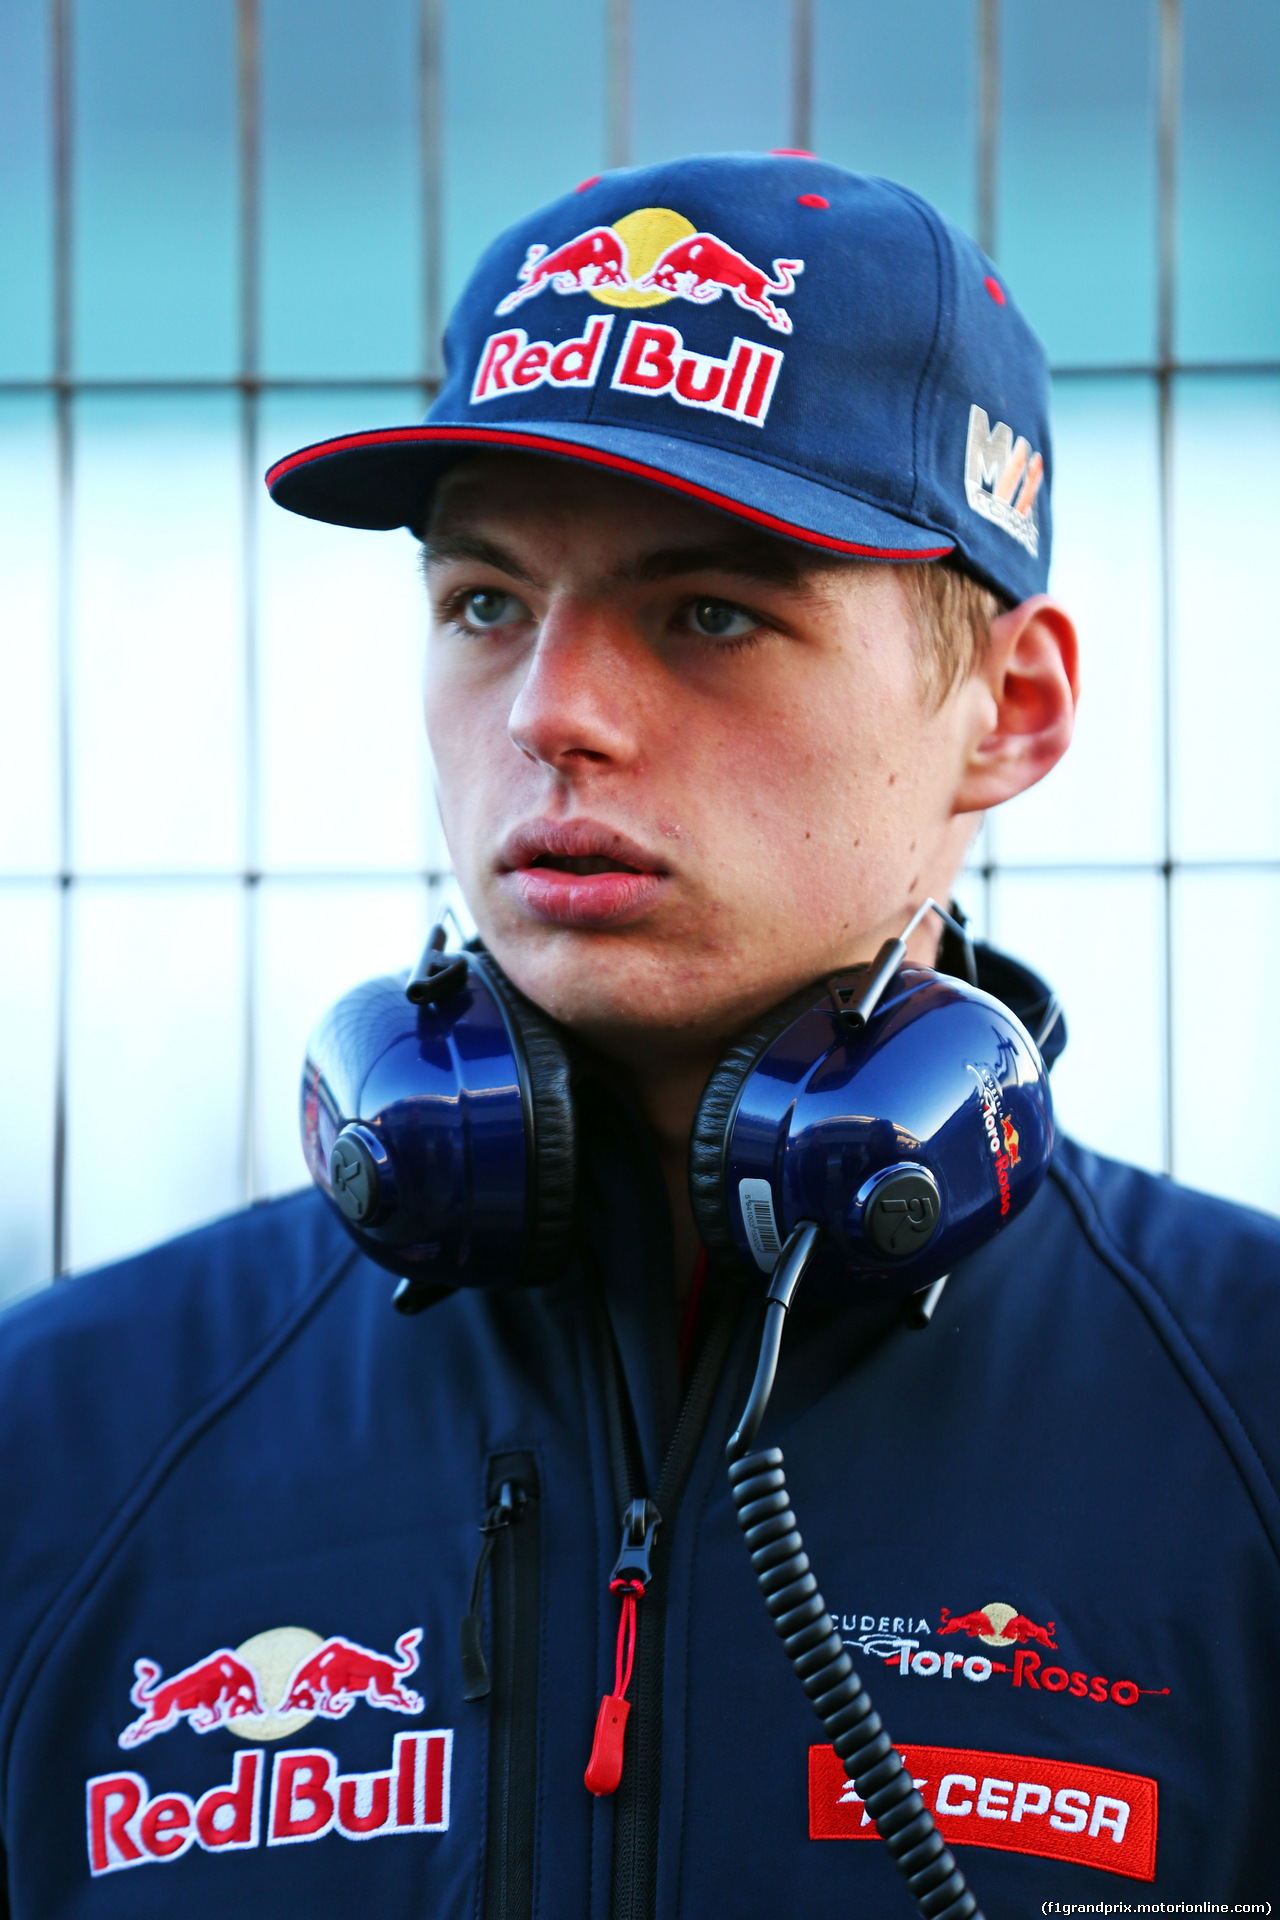 TEST F1 JEREZ 1 FEBBRAIO, Max Verstappen (NLD) Scuderia Toro Rosso.
01.02.2015.